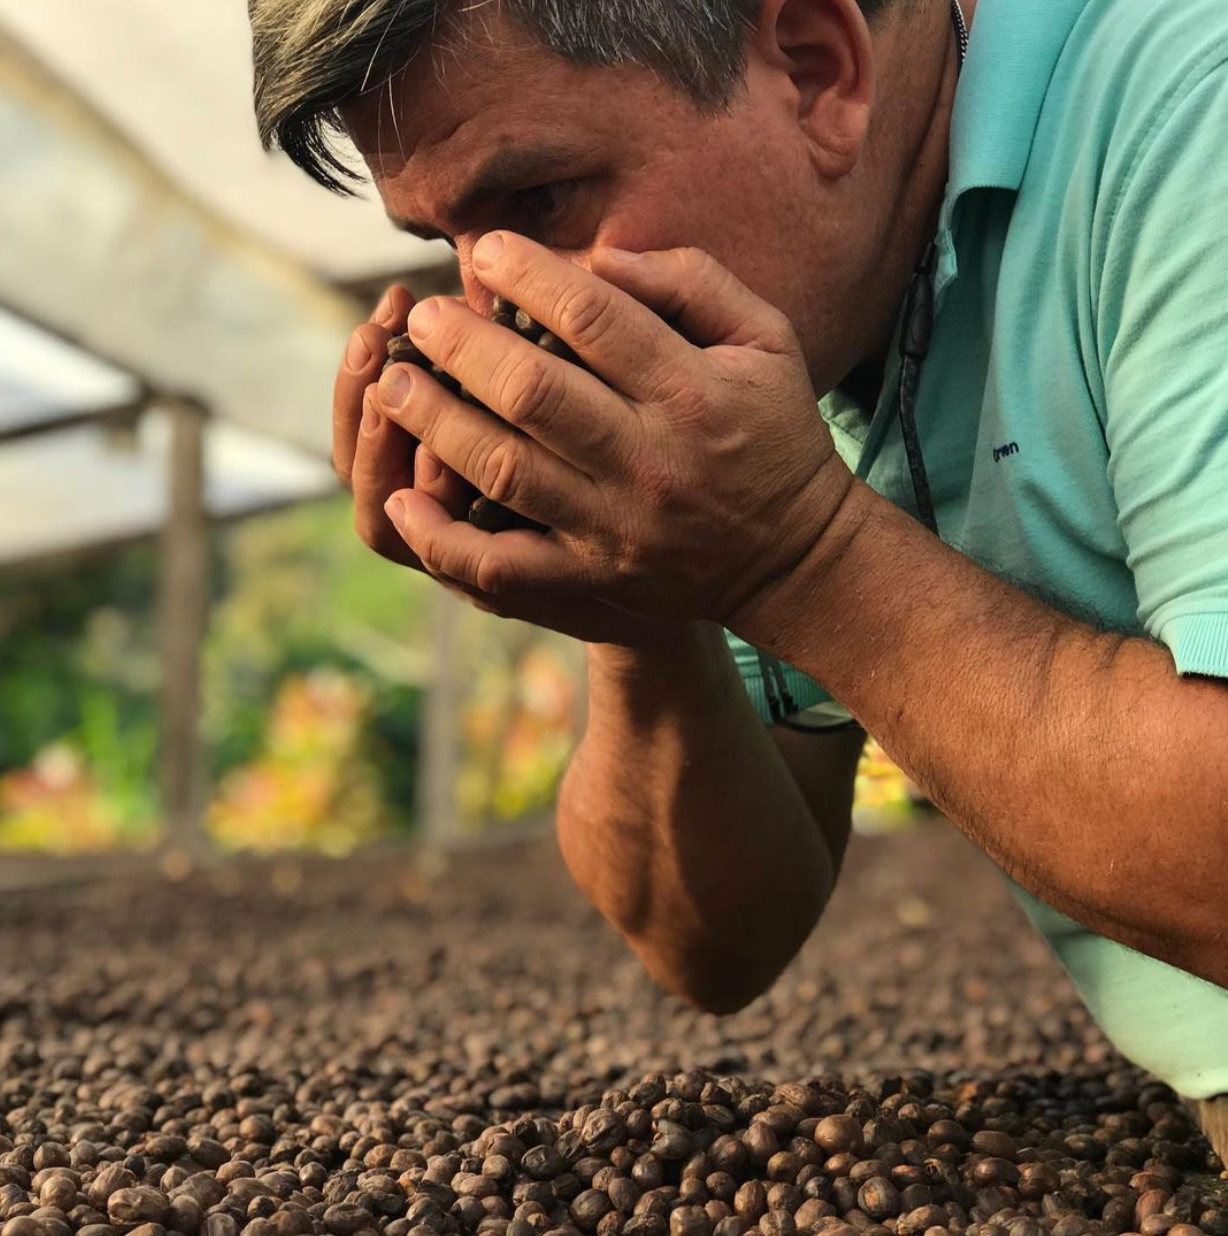 Allan Hartman en la Finca Hartmann en Panamá, oliendo cerezas de cafés secados de manera natural. Uno de esos café naturales será el lote de café caturra que después tostará Kima Coffee en Málaga. España